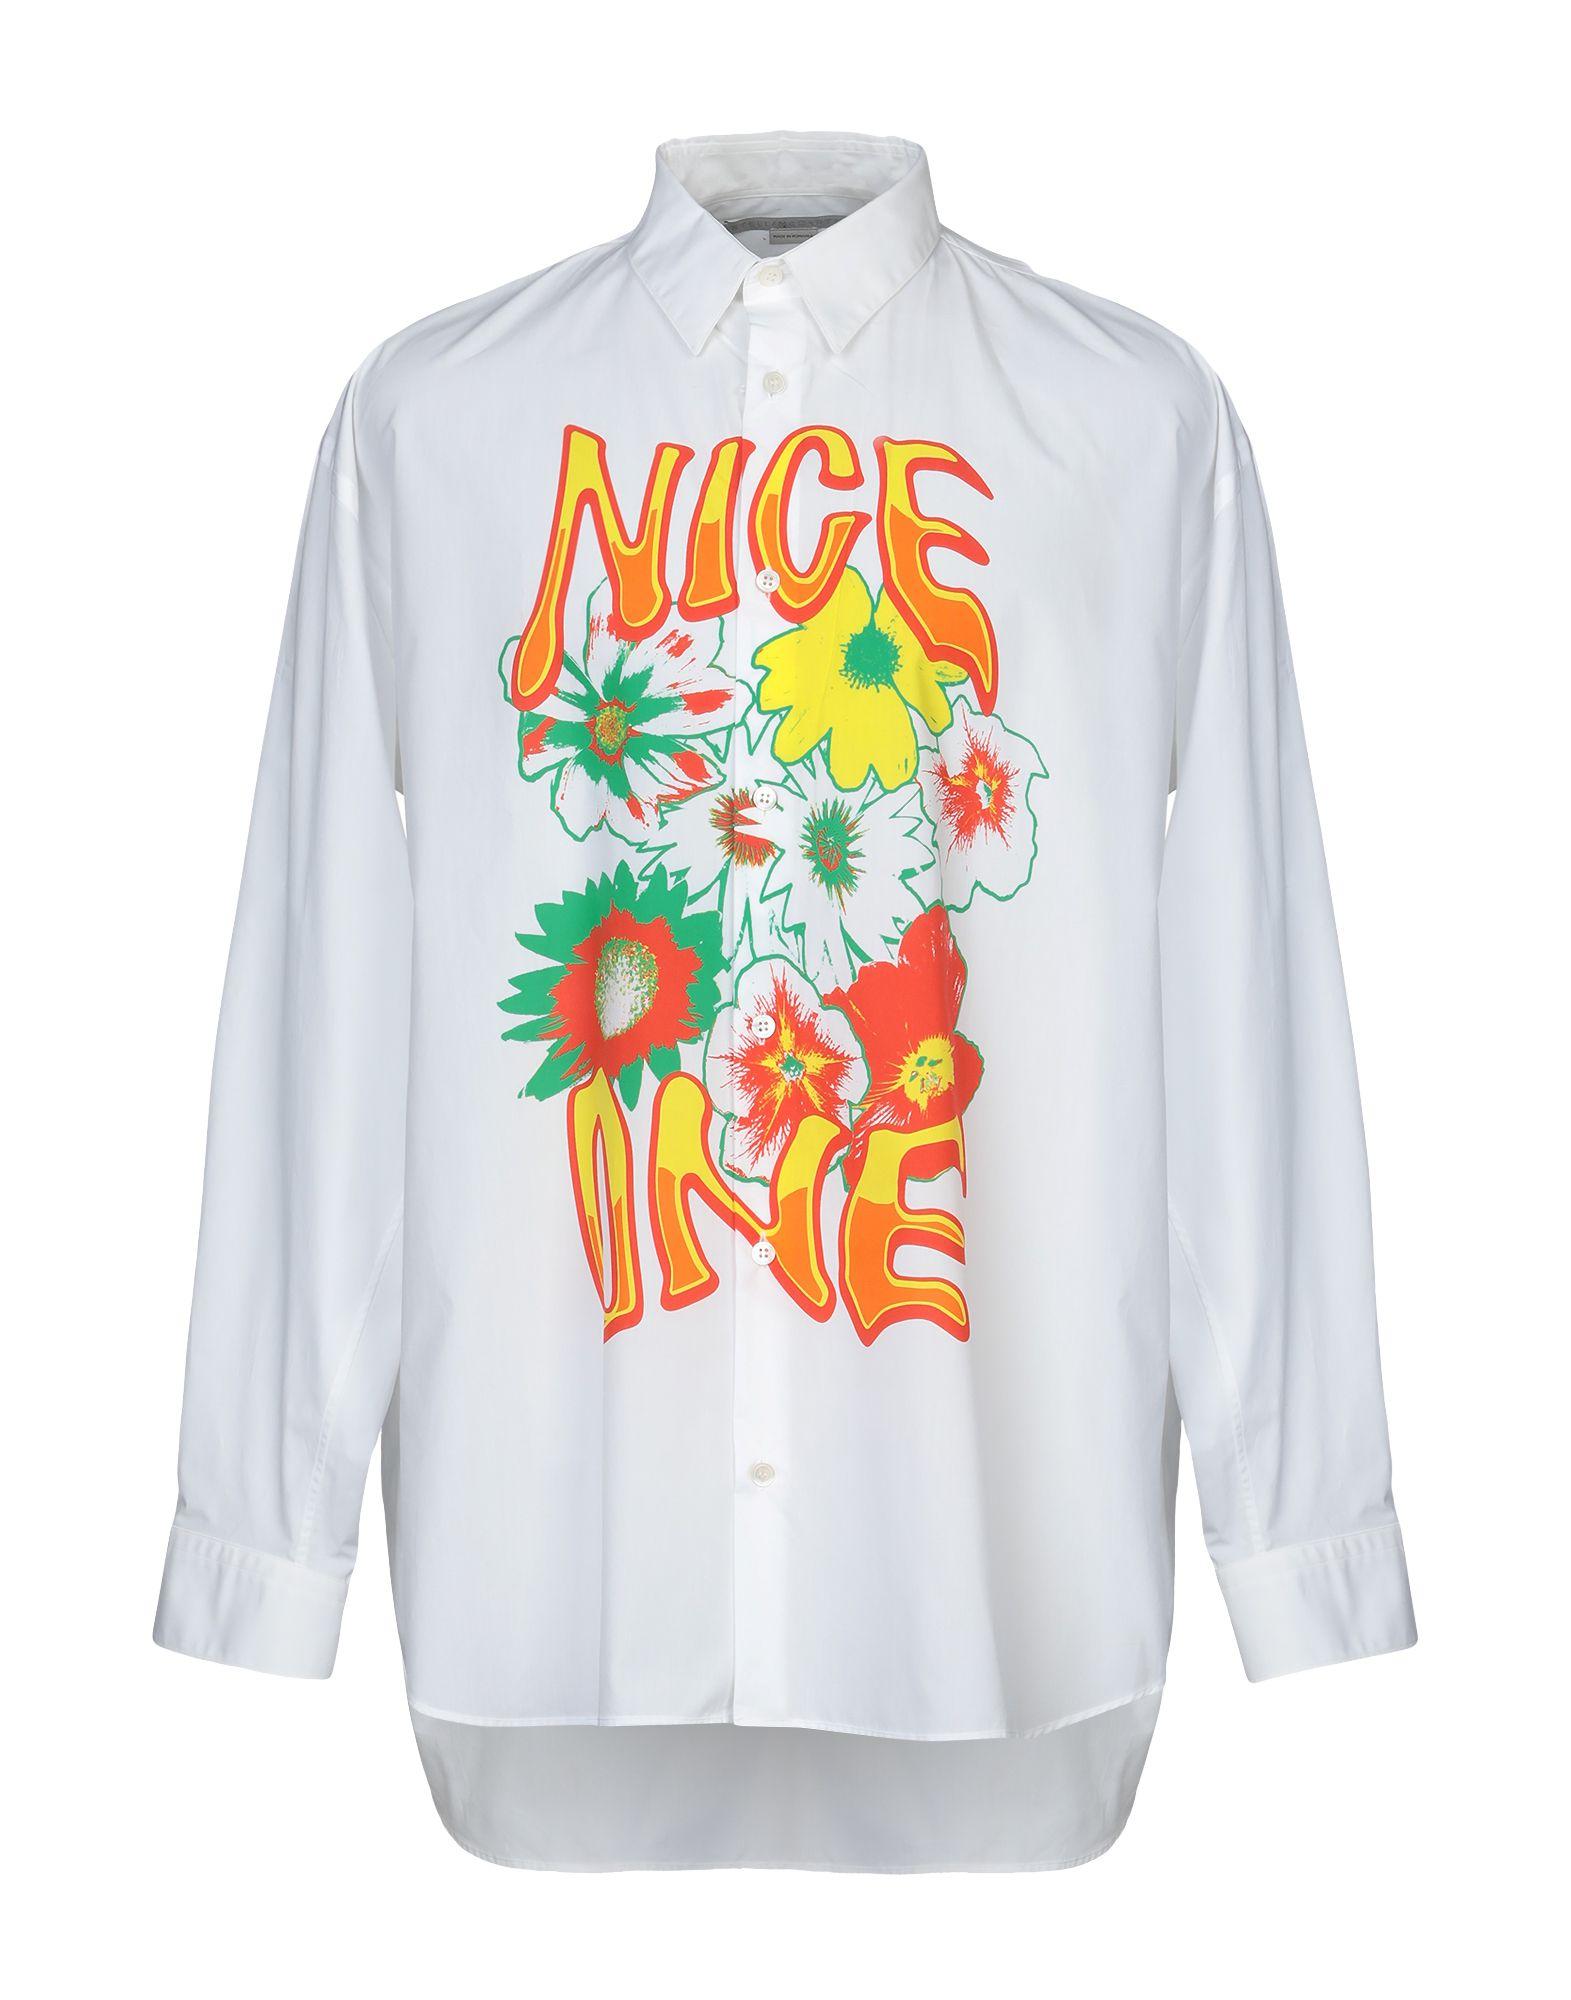 Stella McCartney Shirt in White for Men - Lyst